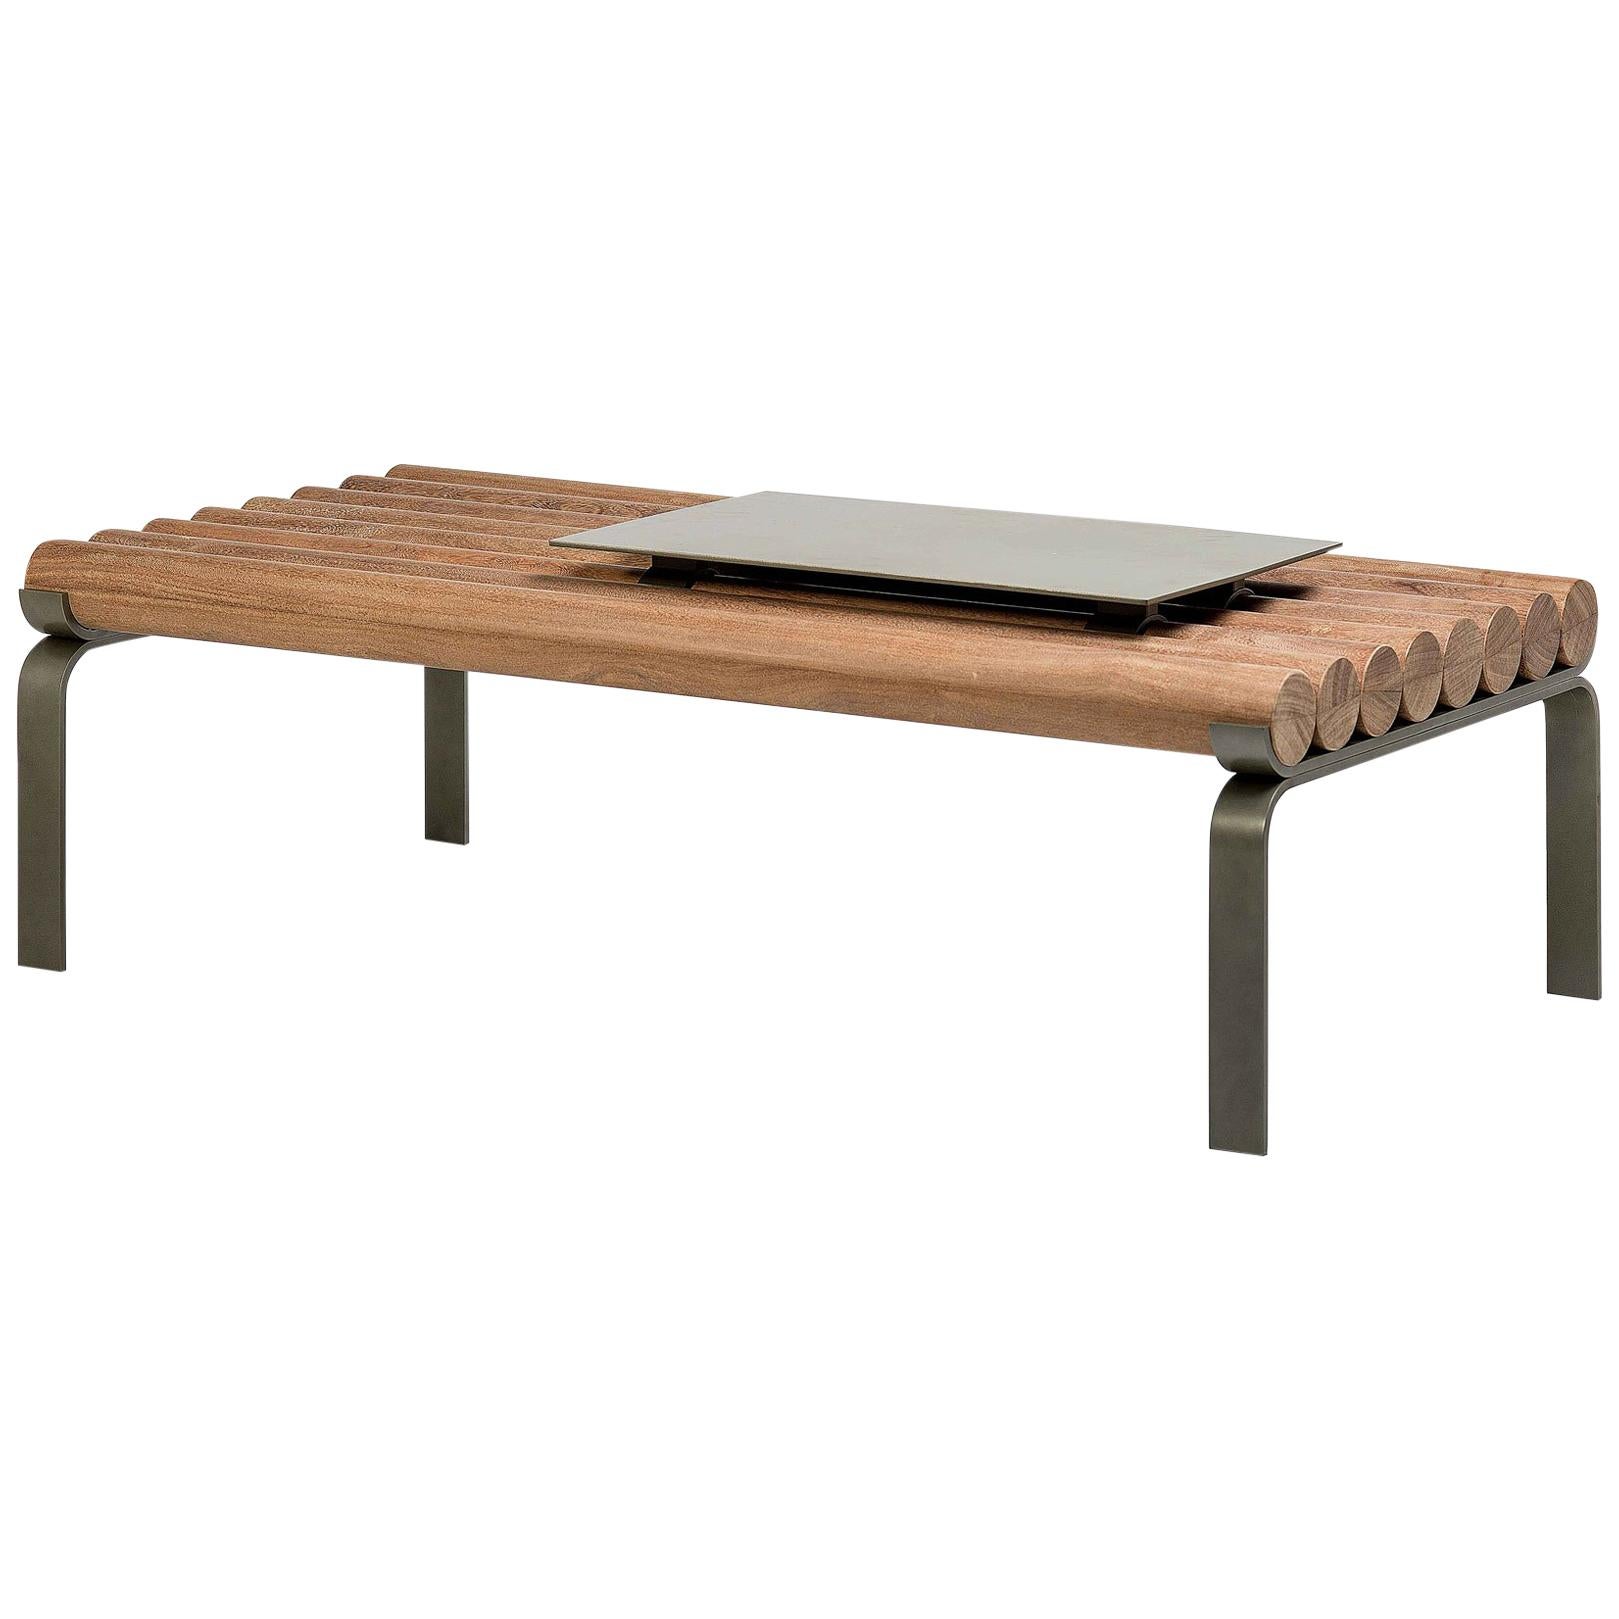 Table centrale « Toras » en bois massif, Arthur Casas, design contemporain brésilien